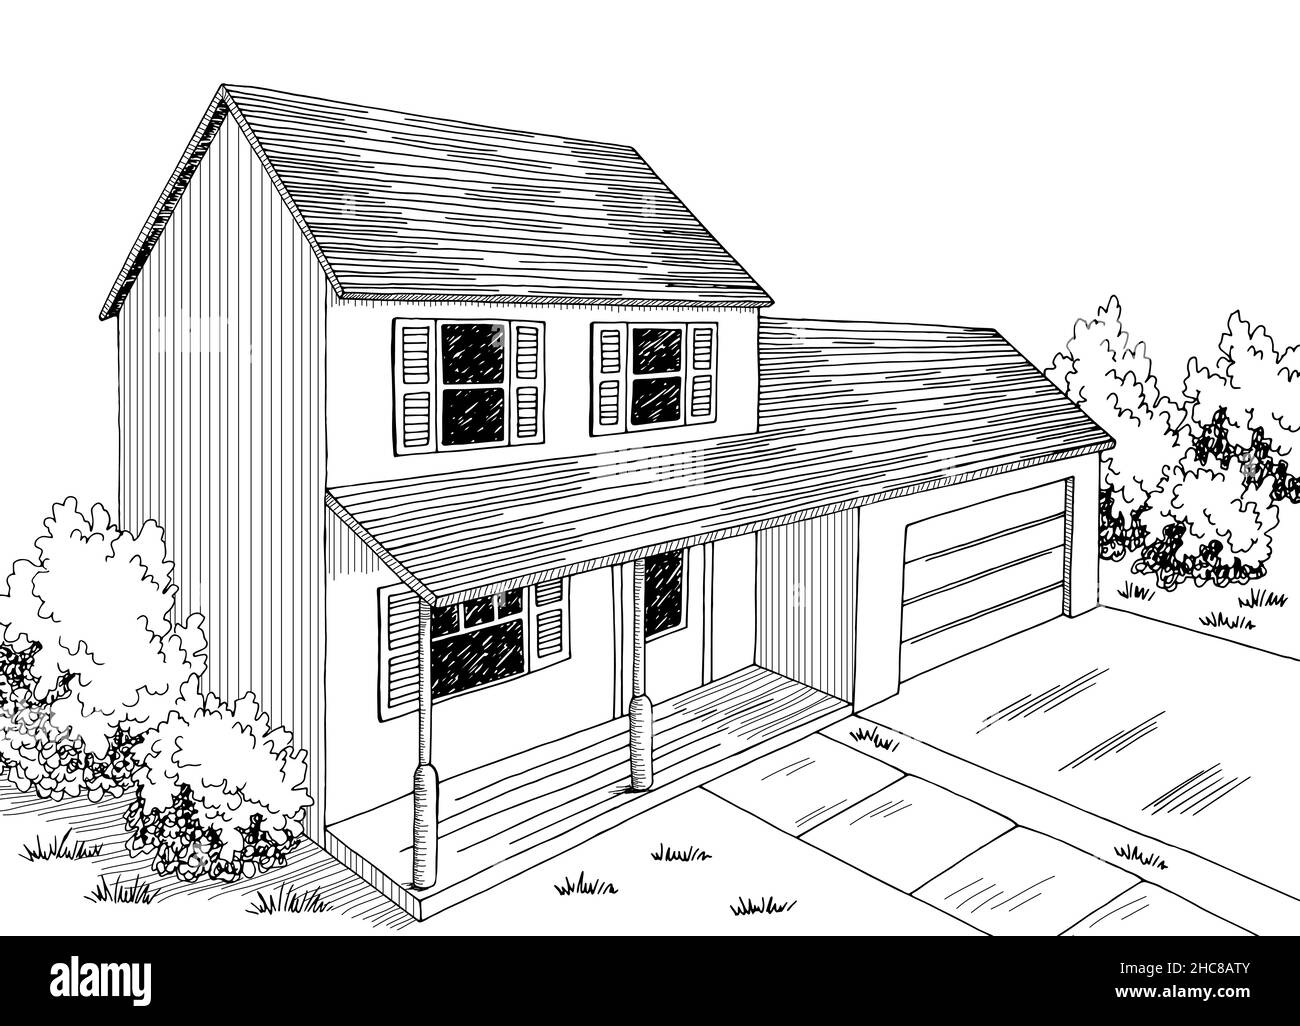 Haus außen Grafik schwarz weiß Skizze Illustration Vektor Stock Vektor